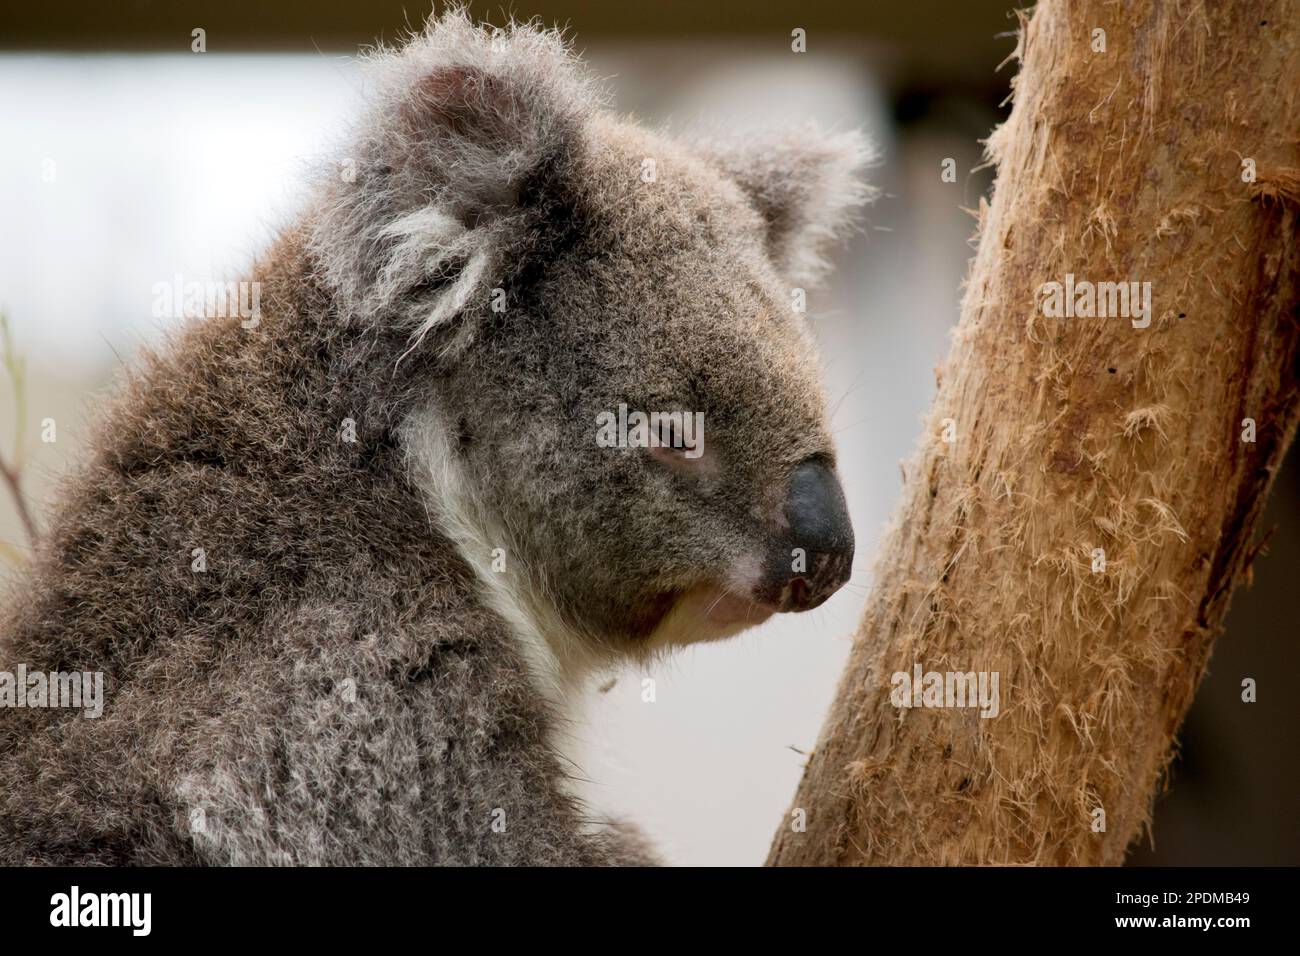 il koala ha orecchie bianche e soffici, occhi marroni e un grosso naso nero Foto Stock